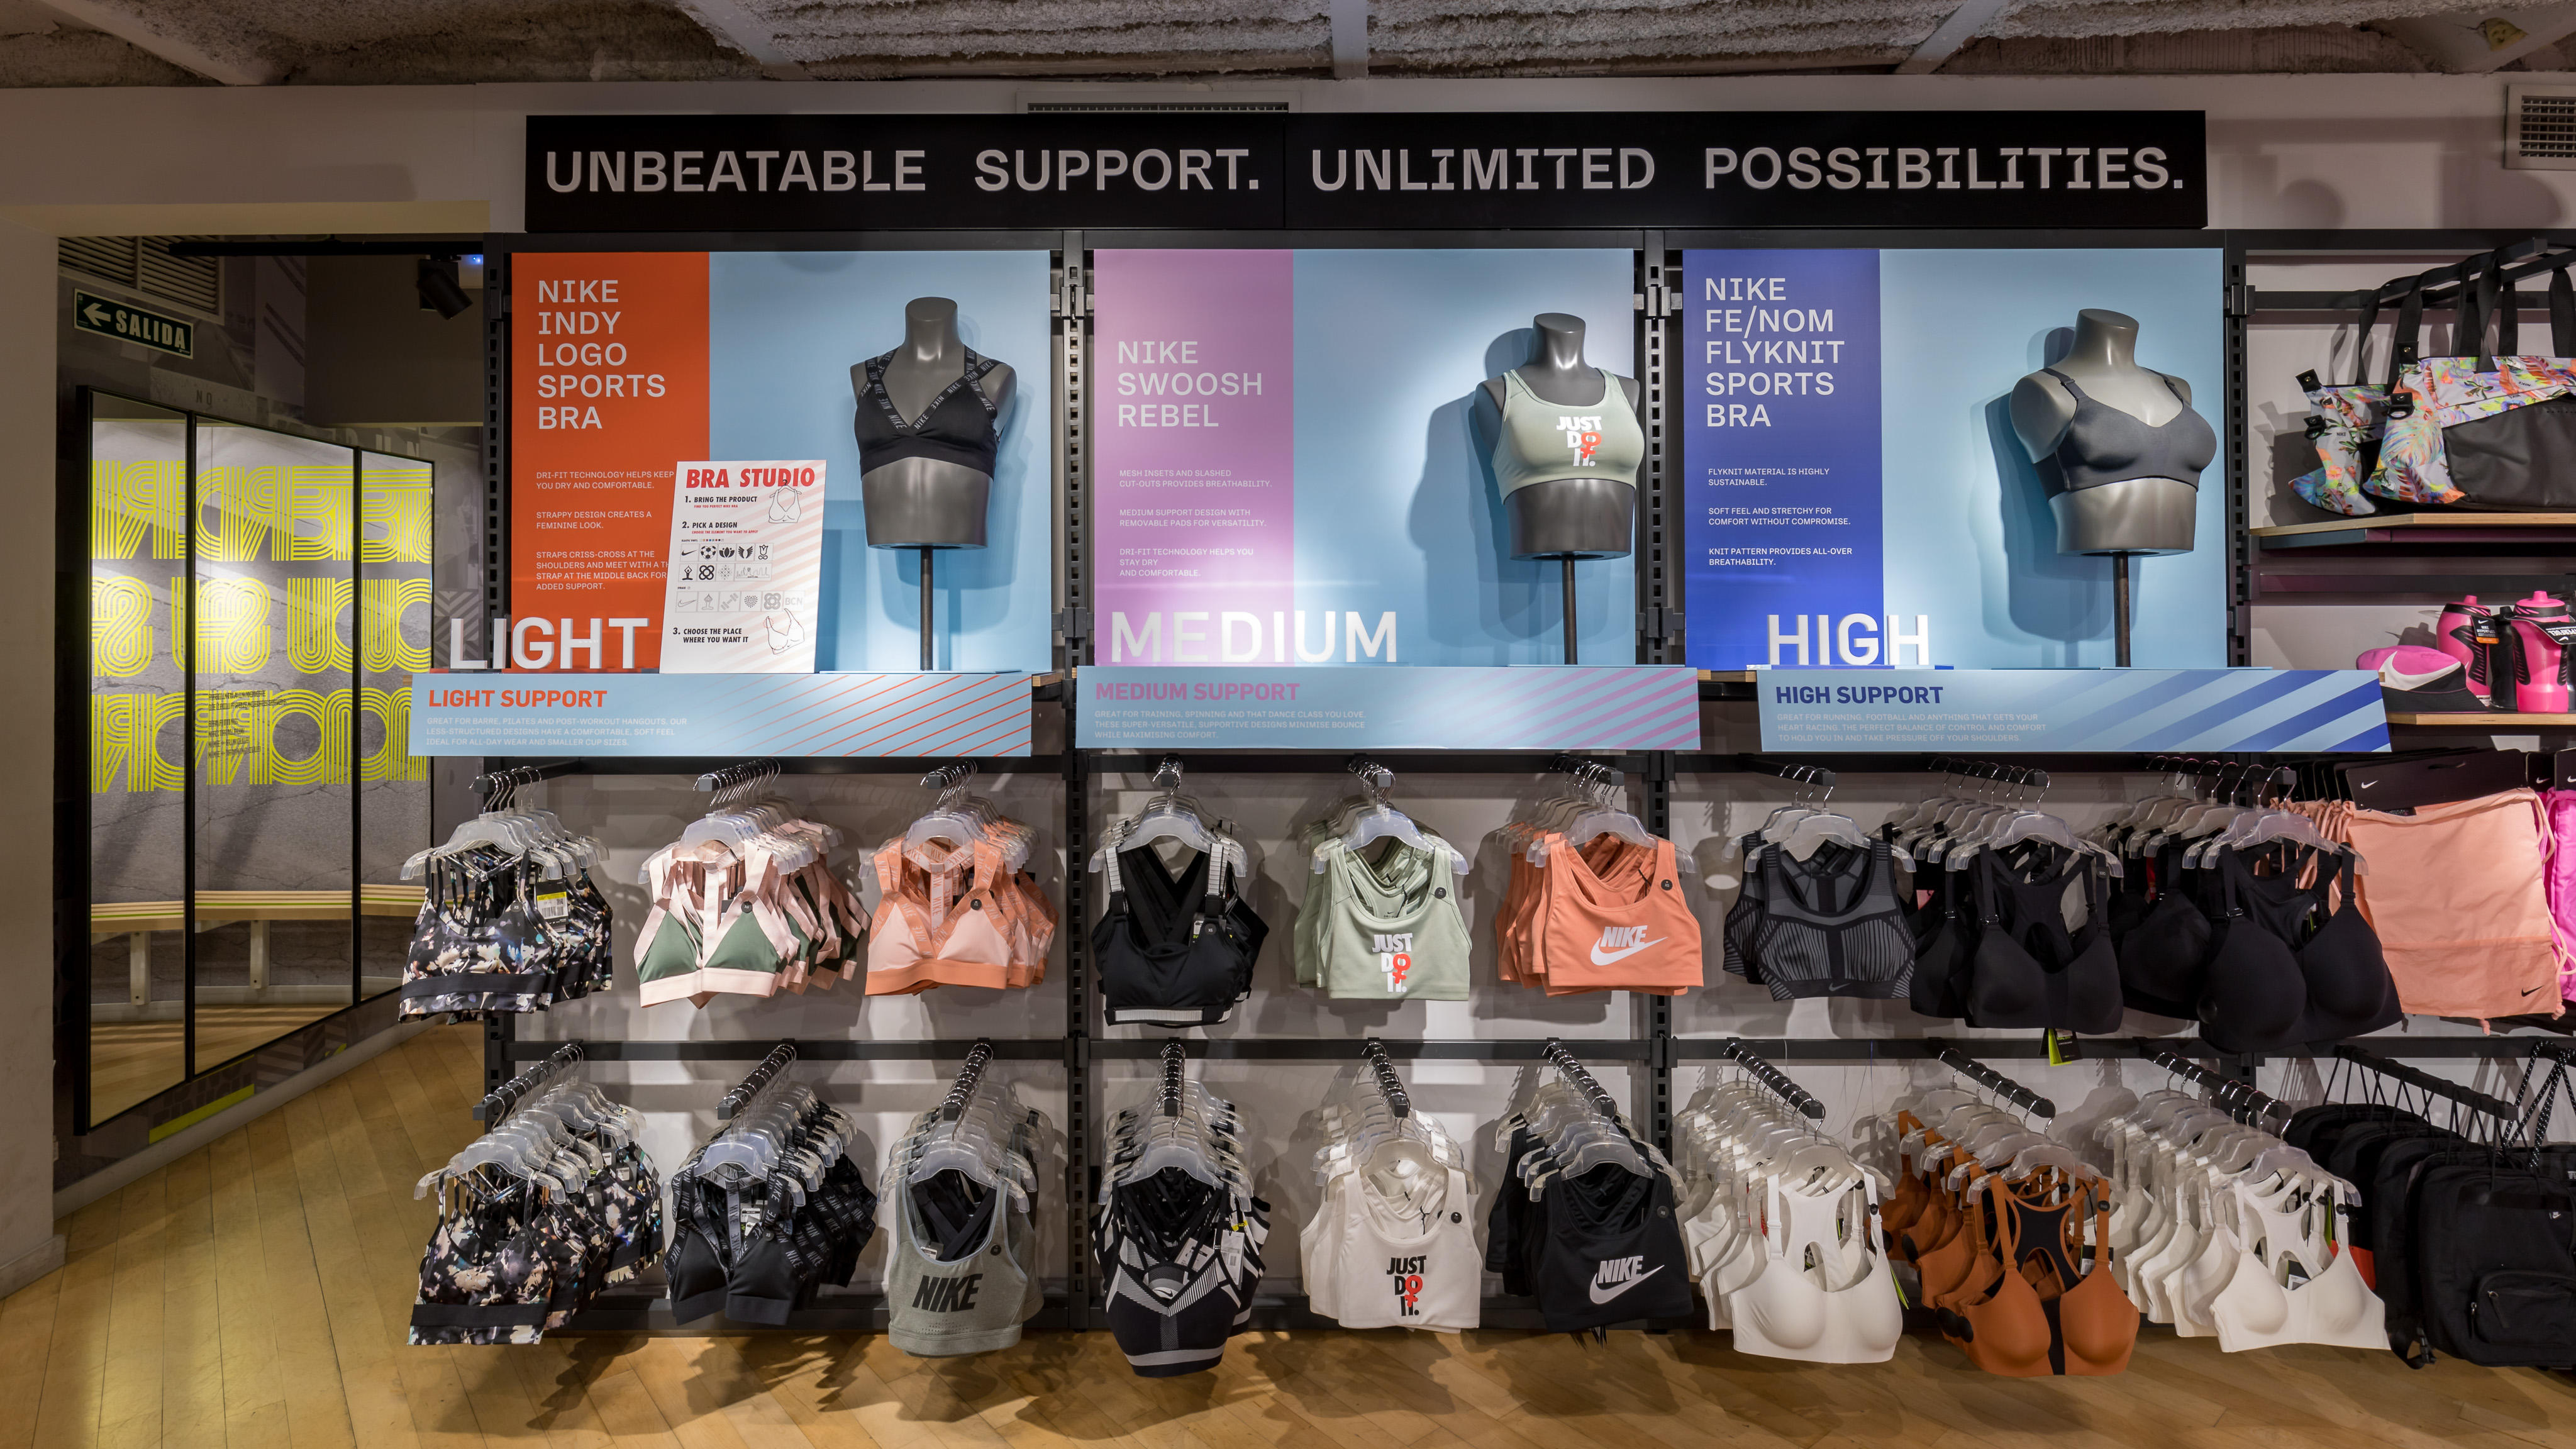 Nike Store - Las Ramblas - Deportes Y Ocio: Y Ropas (Al Por Menor Y Accesorios) en Barcelona (dirección, horarios, opiniones, TEL: 933015...) - Infobel